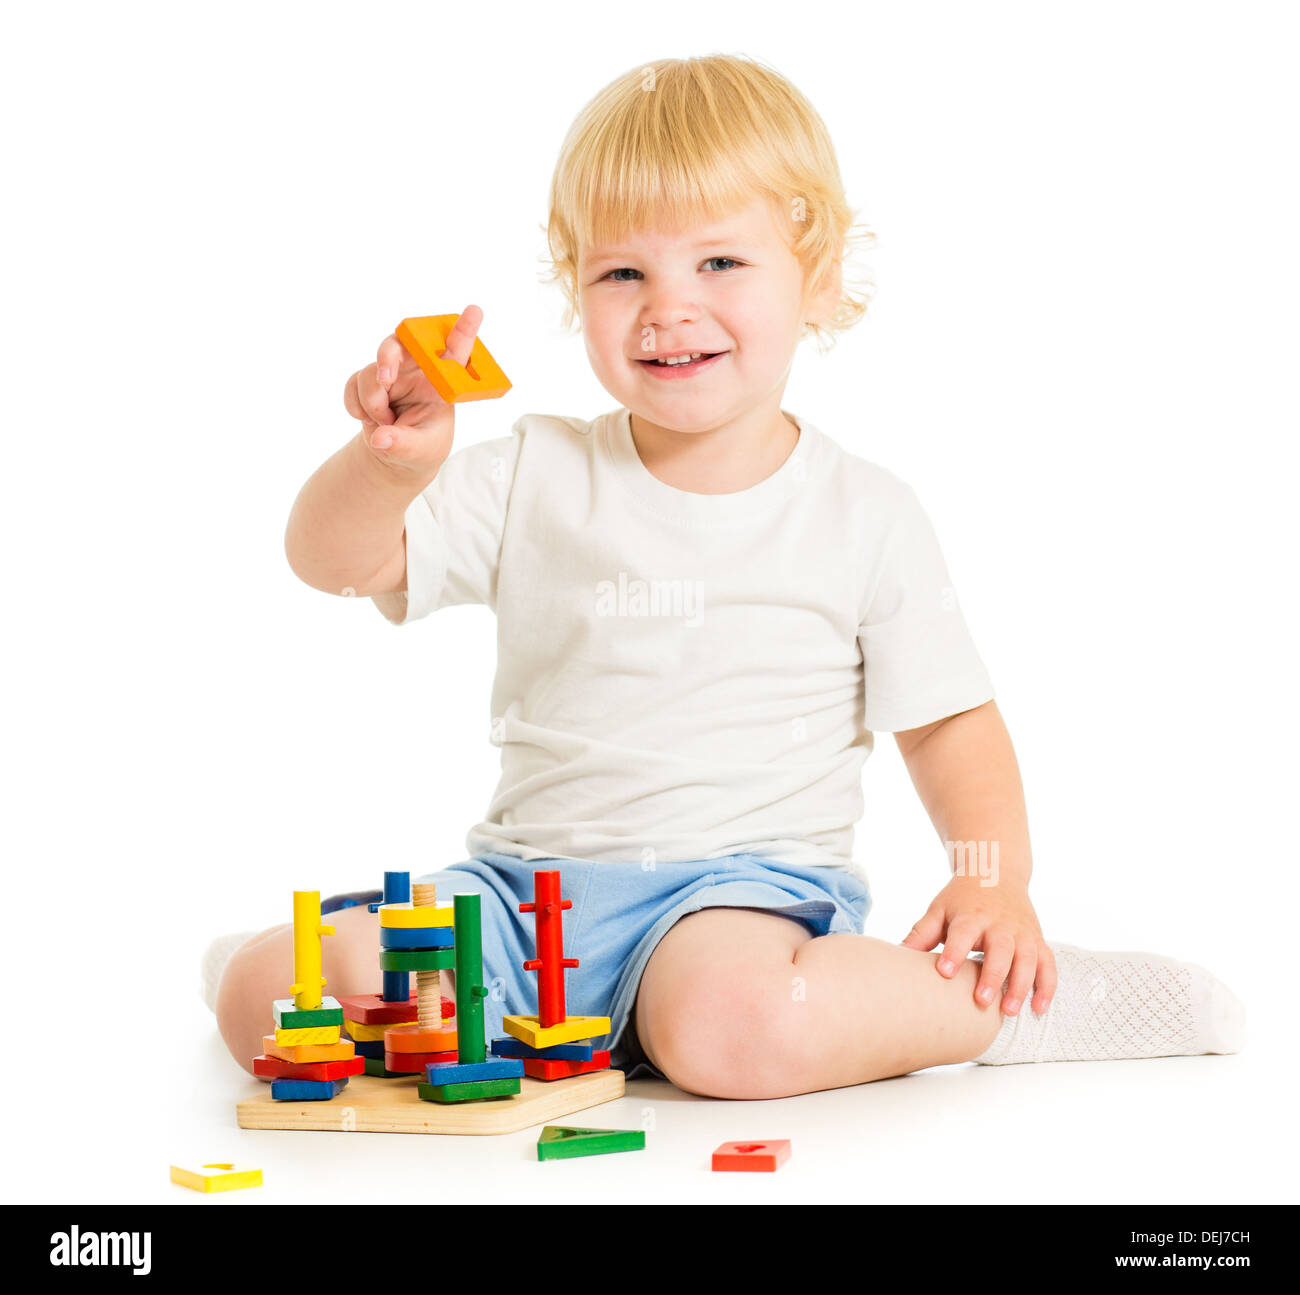 Happy kid jouer jouets éducation Banque D'Images